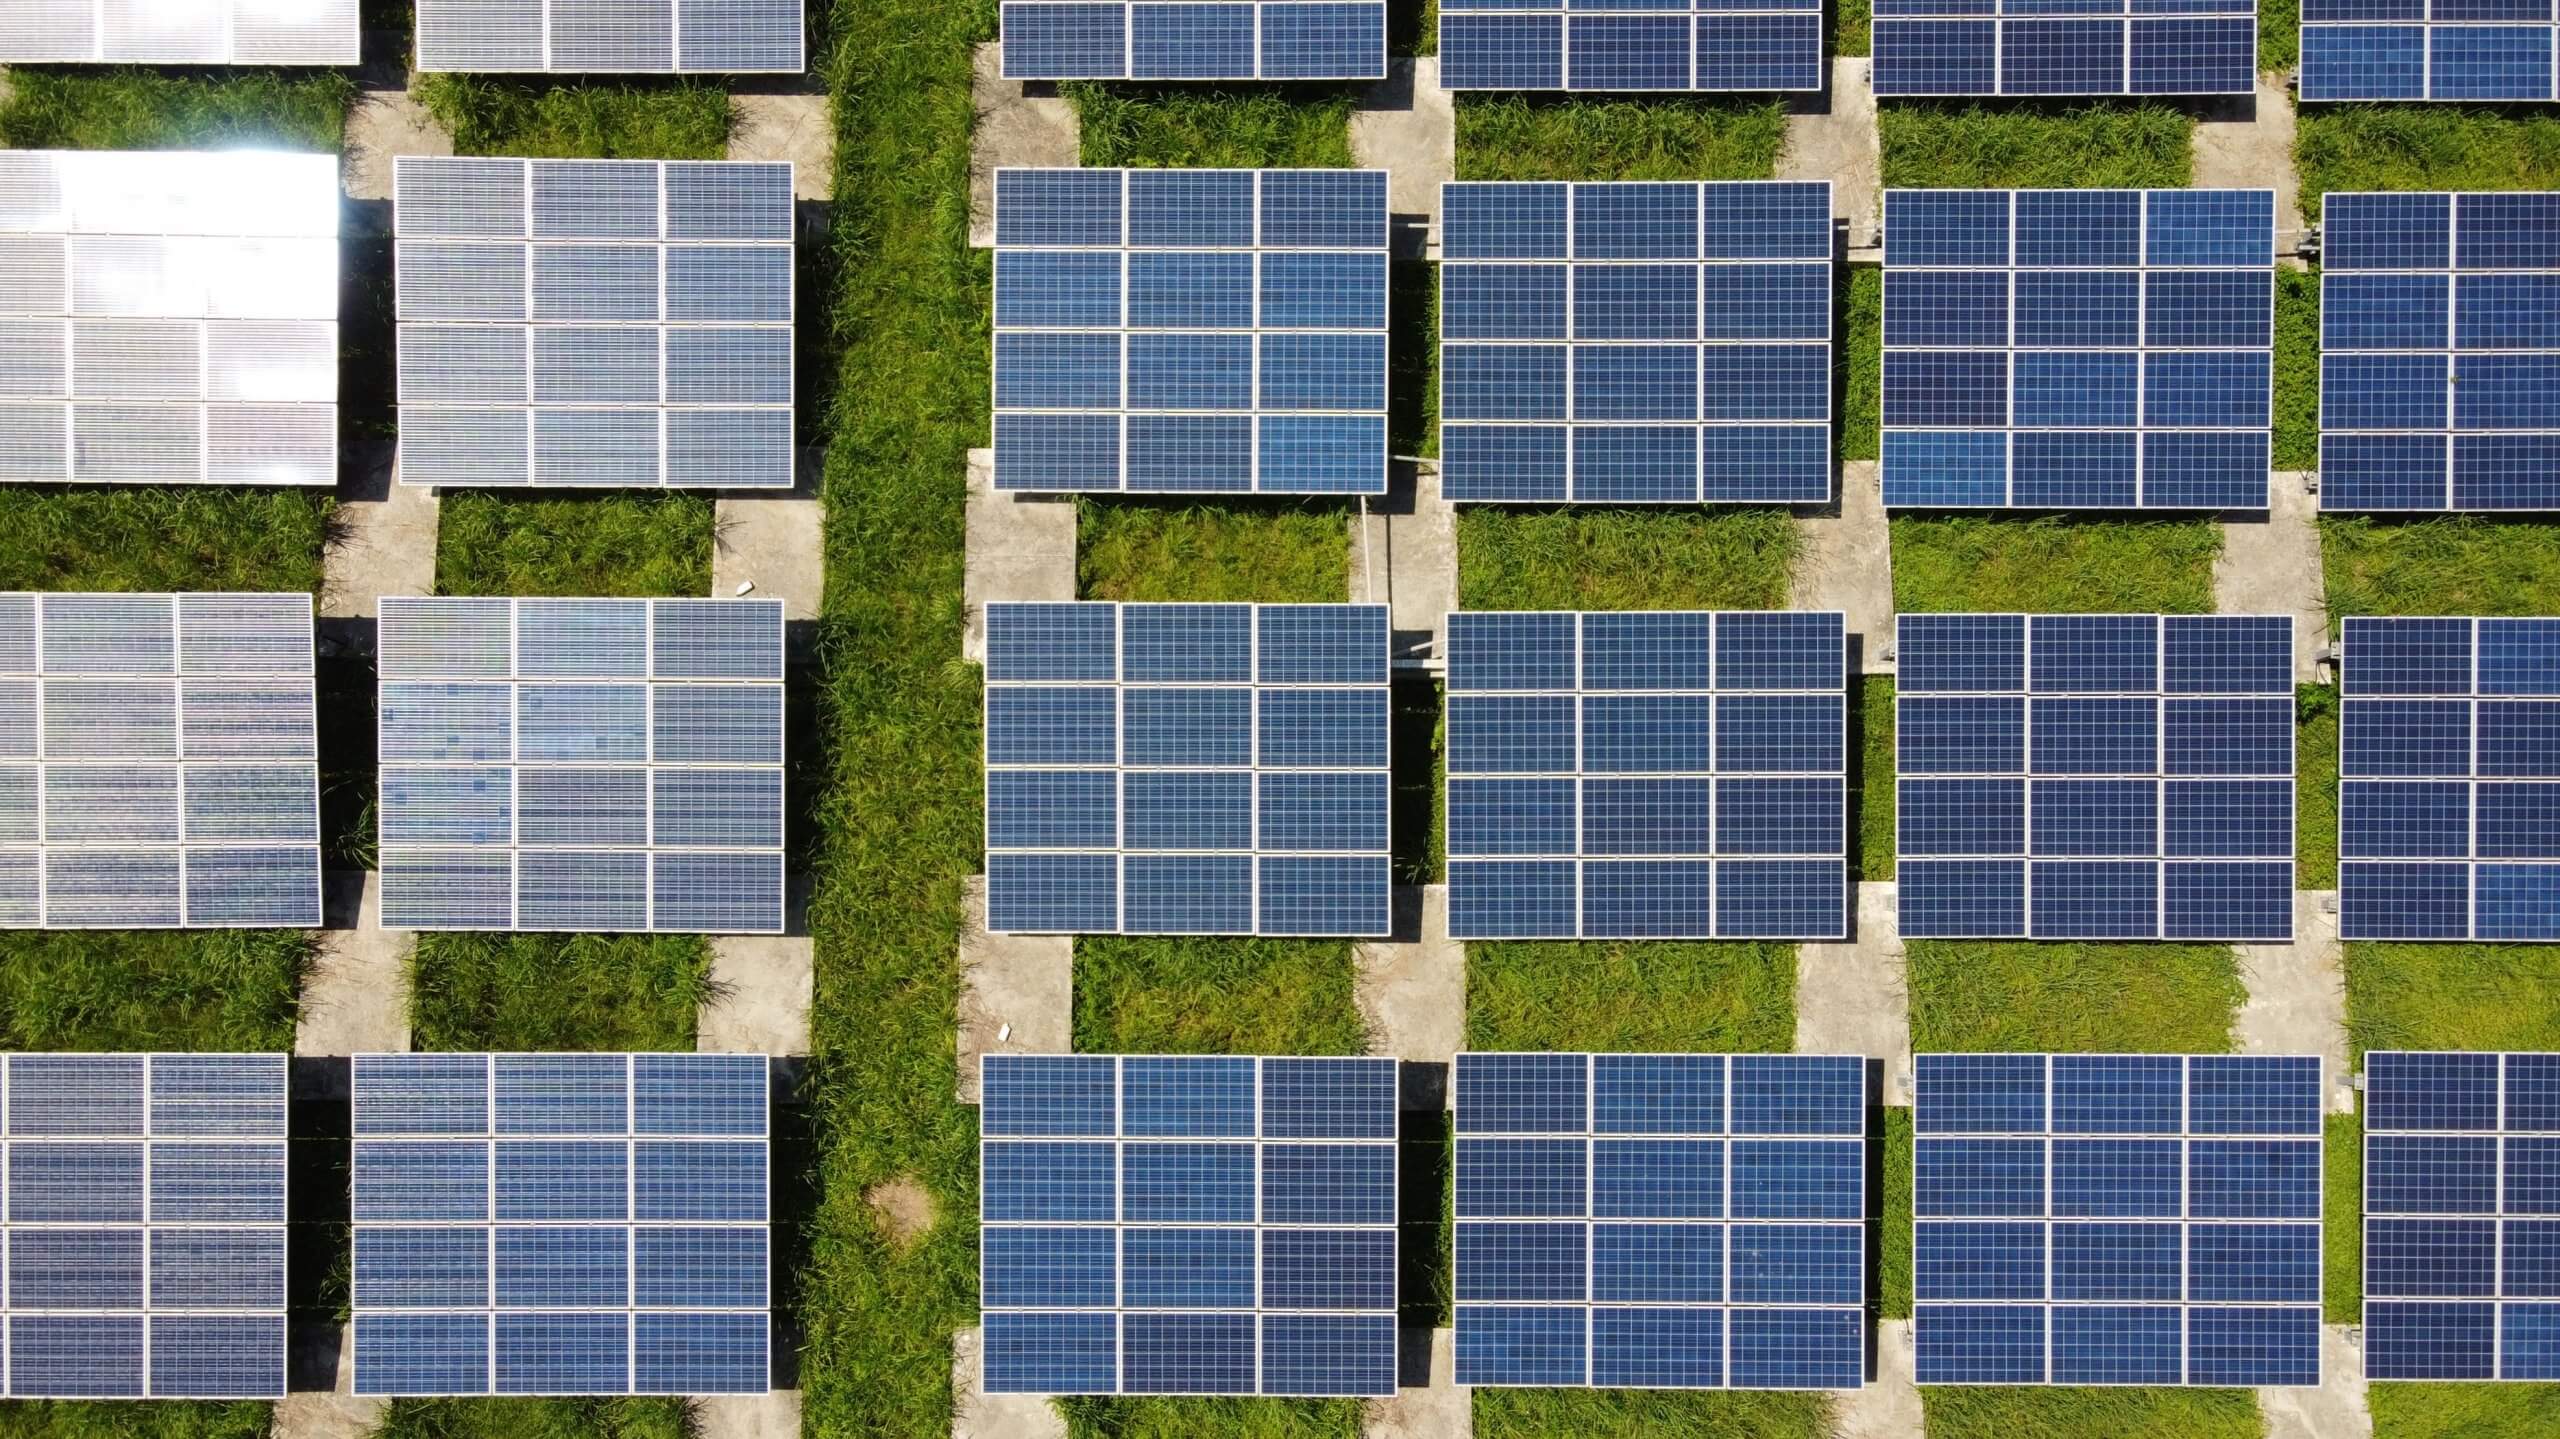 وفي عام 2015، حققت إسرائيل بالفعل تكافؤًا في الأسعار في بناء البنية التحتية بين الطاقة الشمسية الأرضية والطاقة التقليدية. تصوير أندرس جي على Unsplash